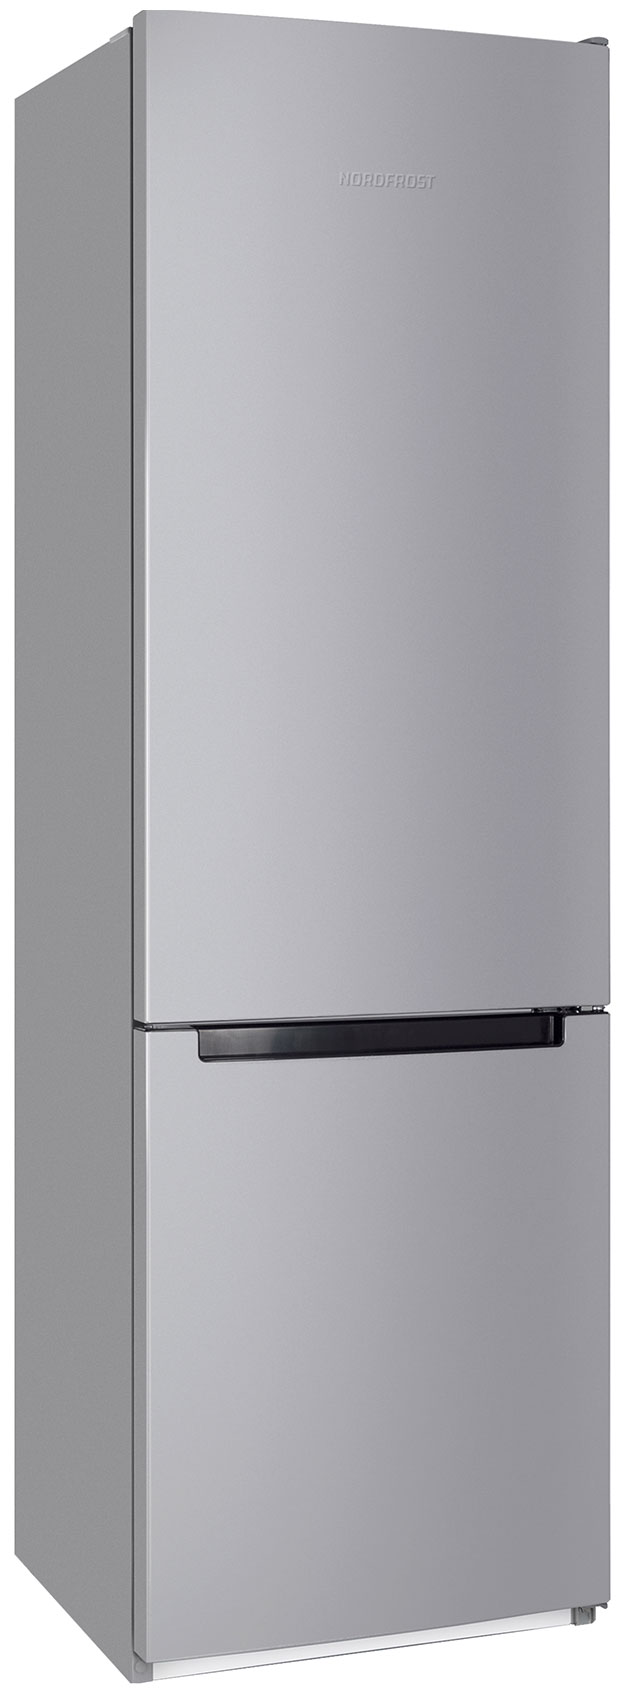 Холодильник NordFrost NRB 134 S серебристый холодильник nordfrost rfc 350d nfym